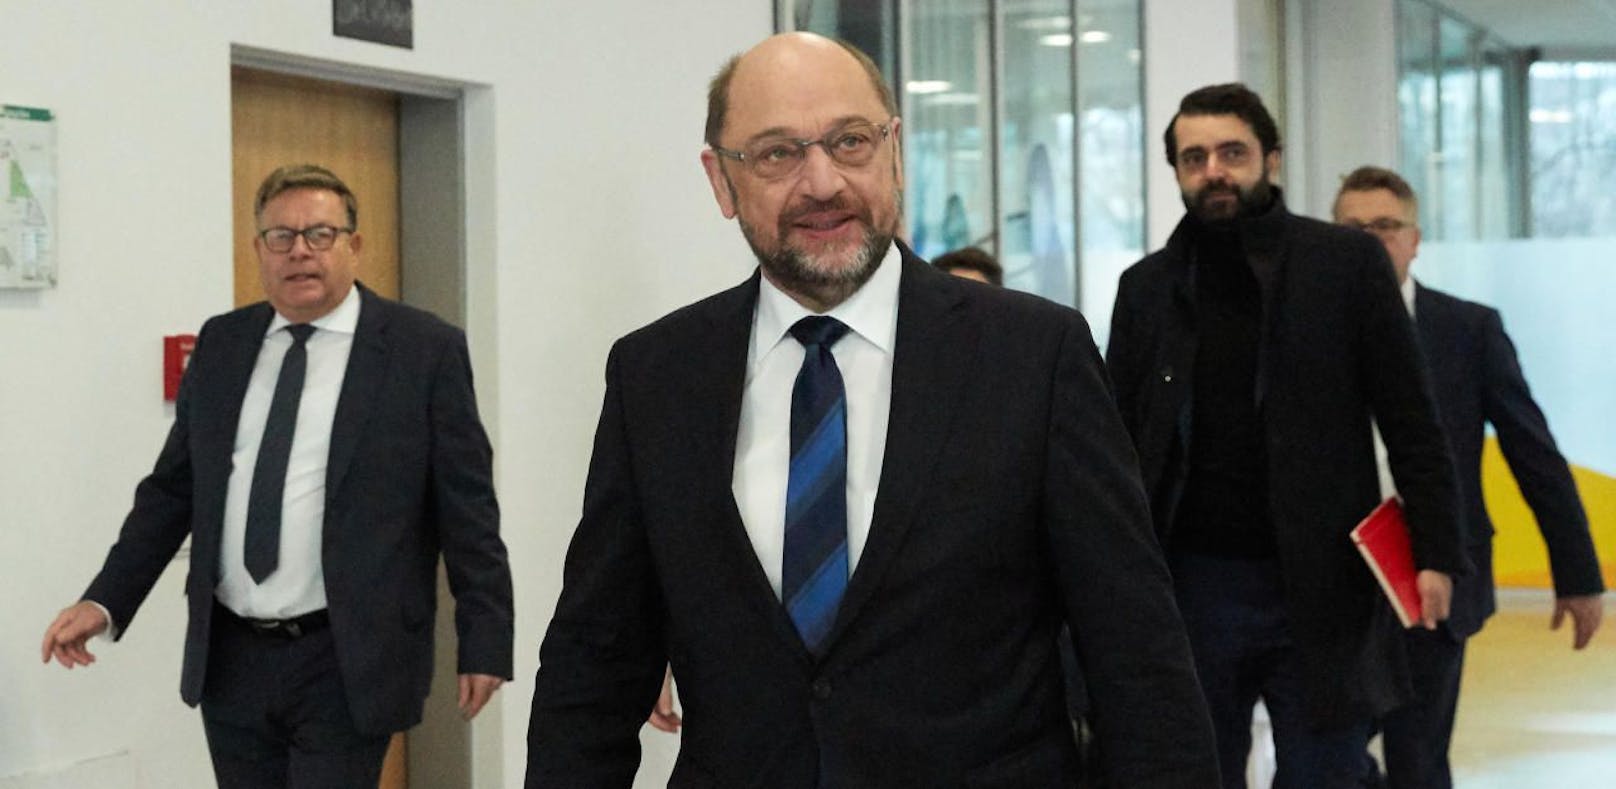 SPD-Vorsitzender Martin Schulz trifft zu den Gesprächen in Berlin ein.